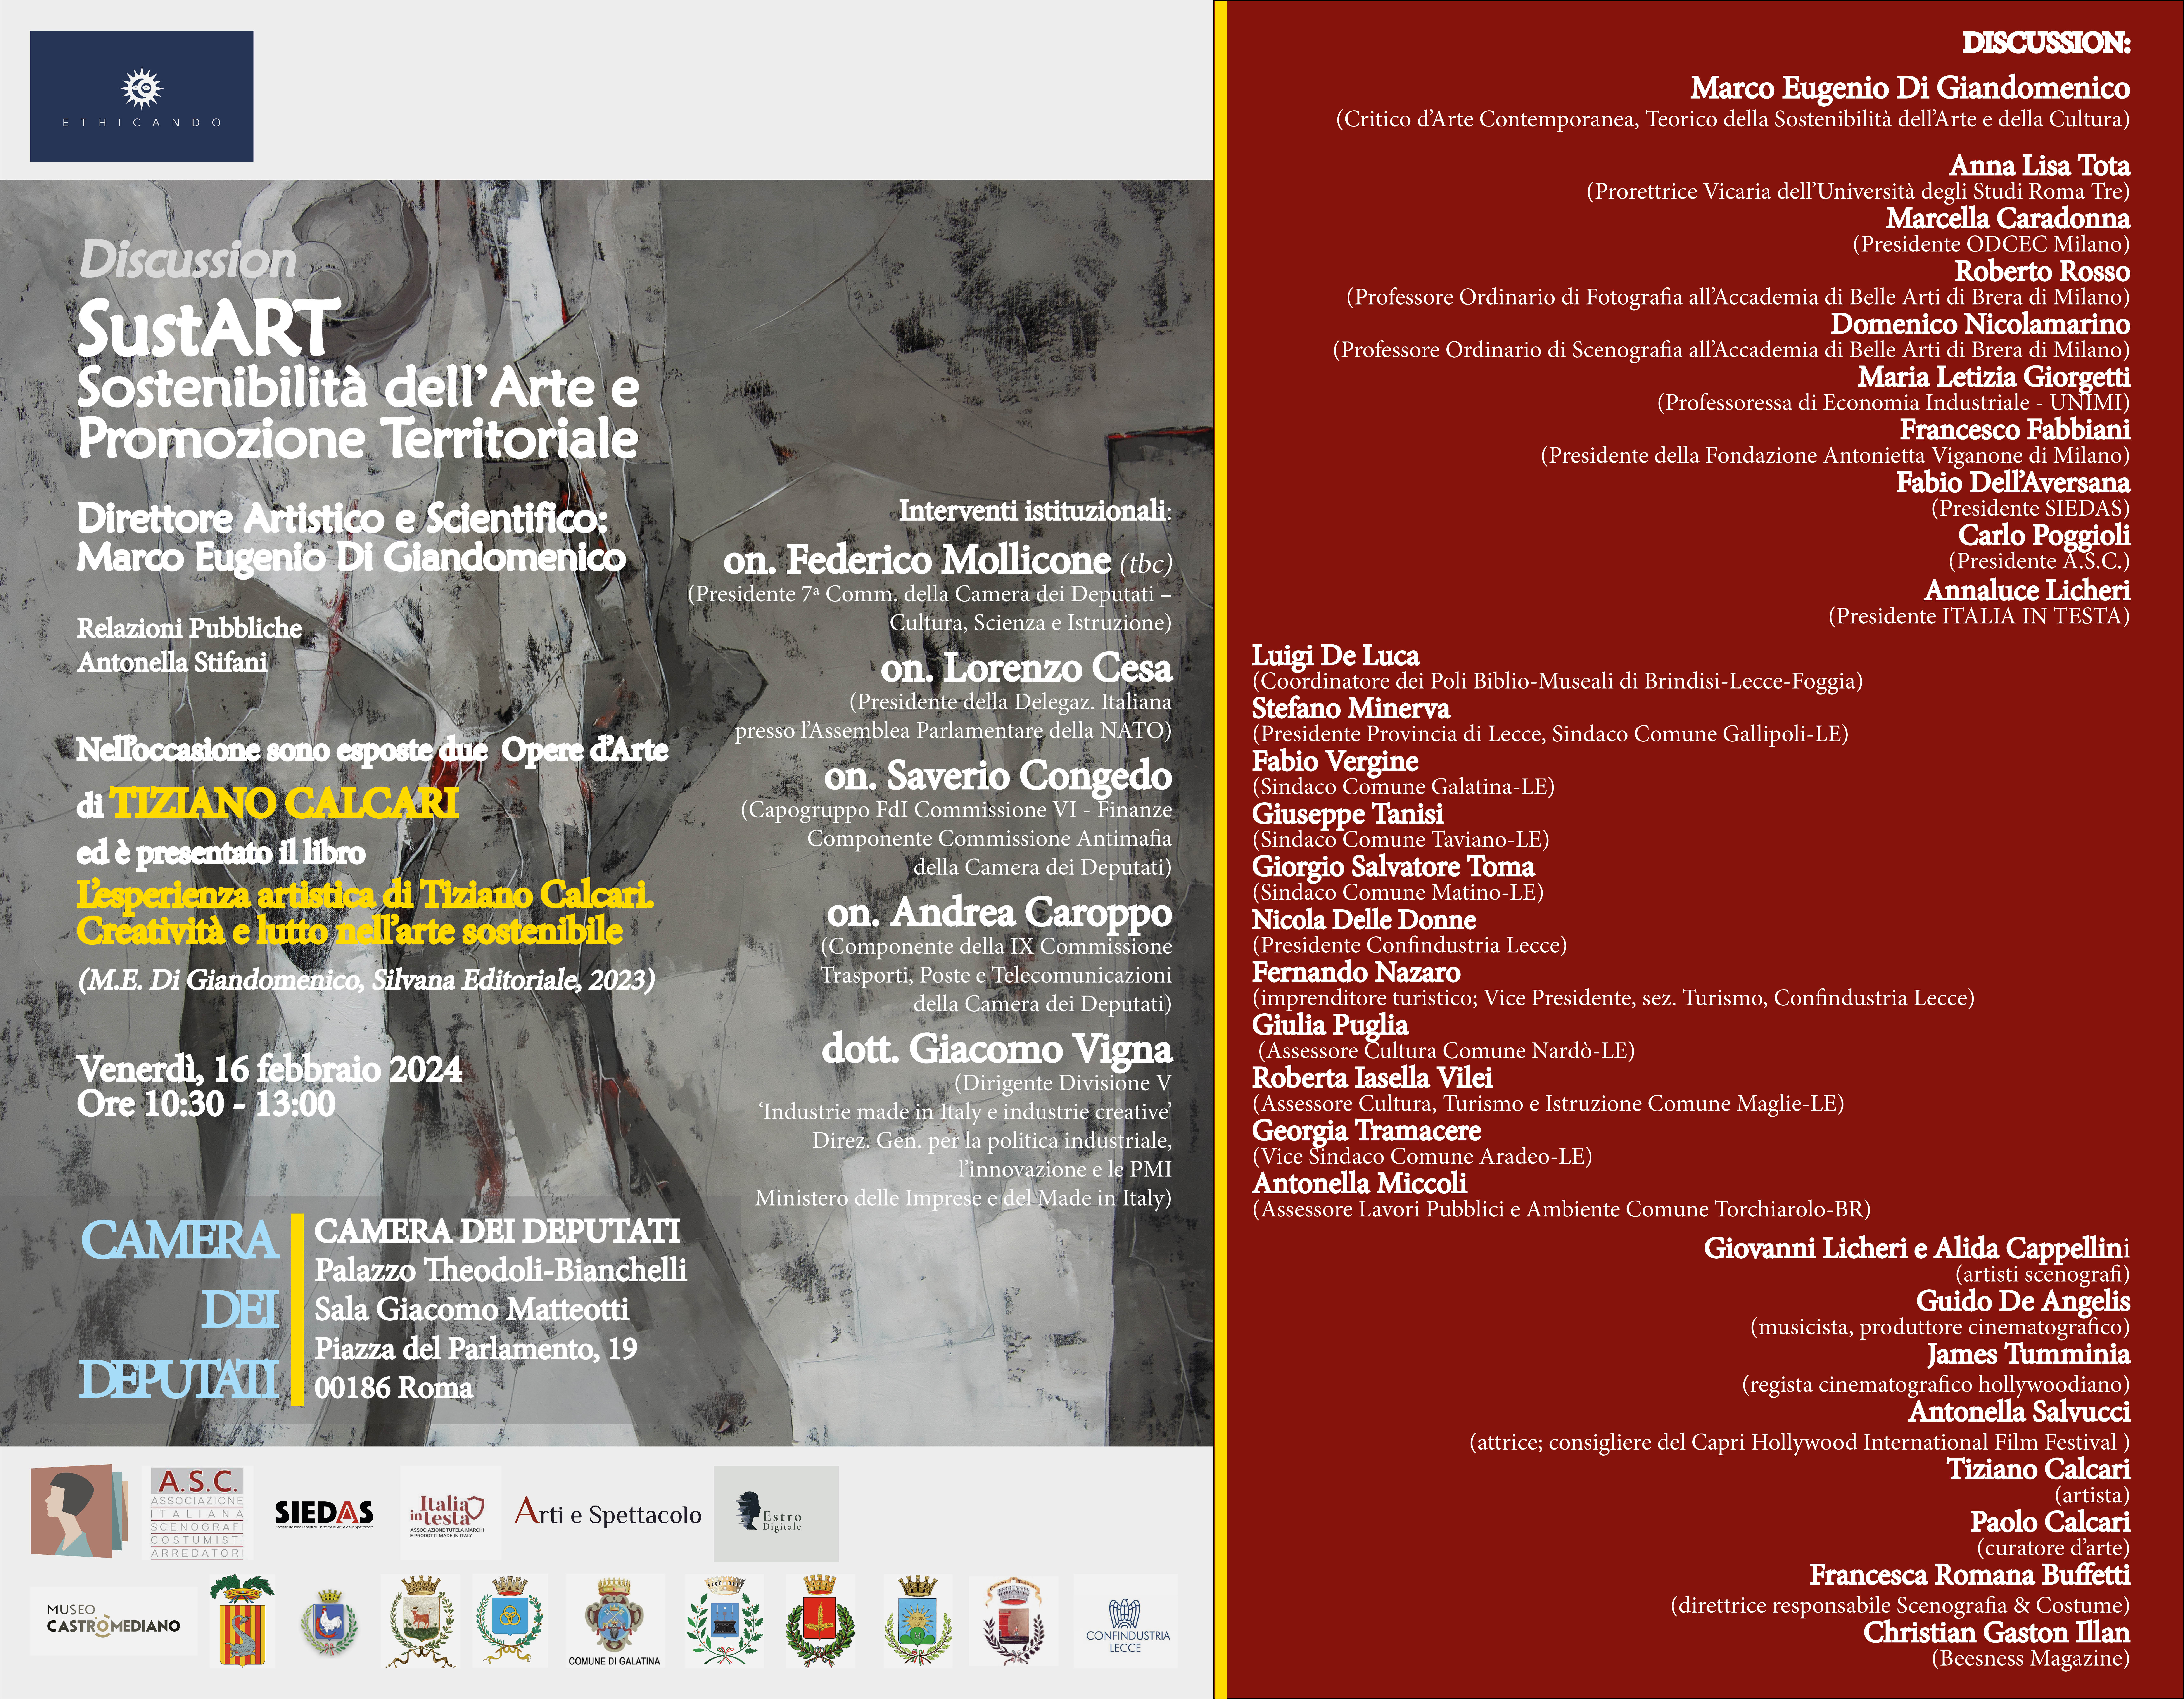 "Sustart", Ethicando organizza l'evento dedicato alla sostenibilità dell'arte e alla promozione territoriale